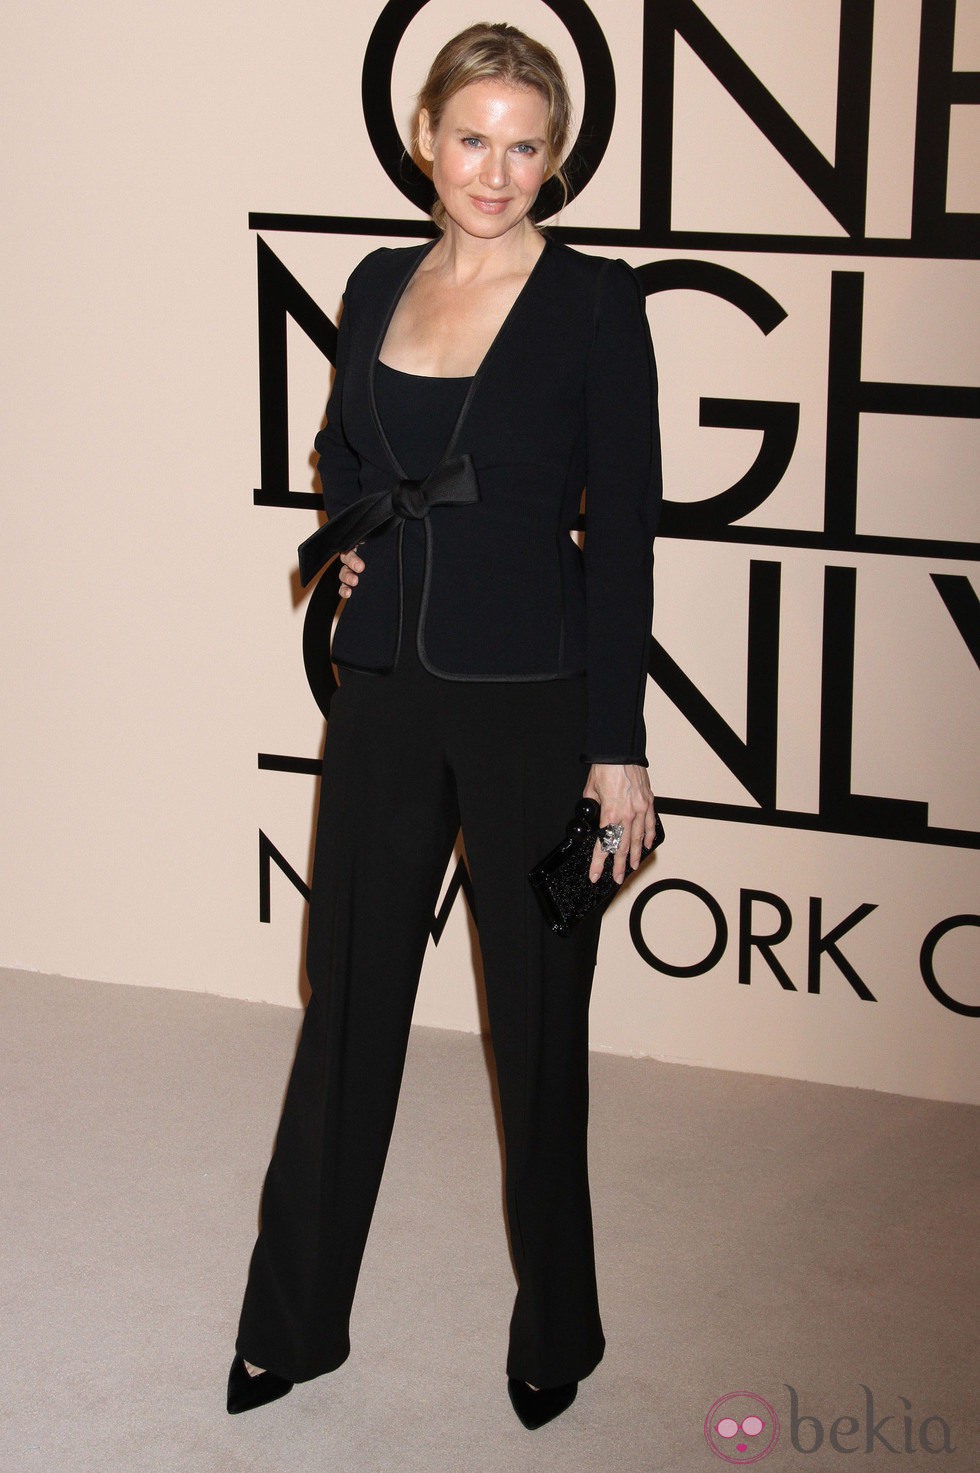 Renee Zellweger en la fiesta de Giorgio Armani 'One Night Only' en Nueva York